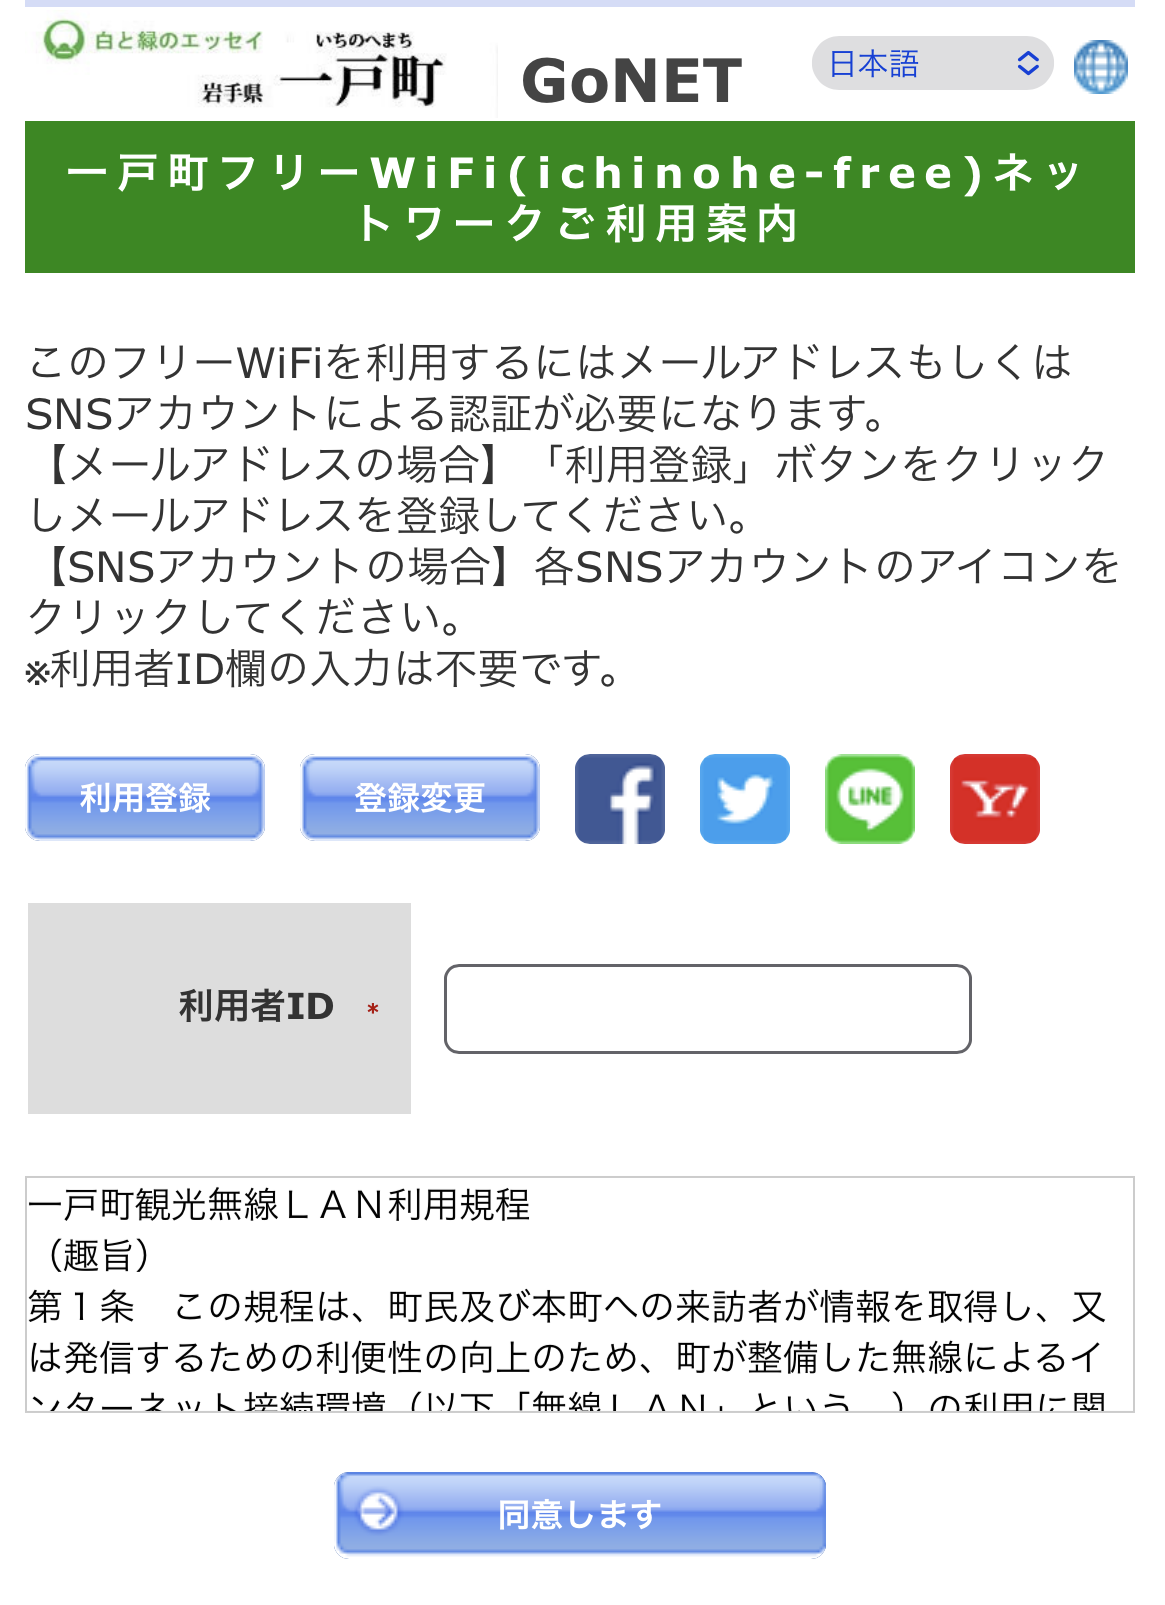 フリーWi-Fi接続トップページ